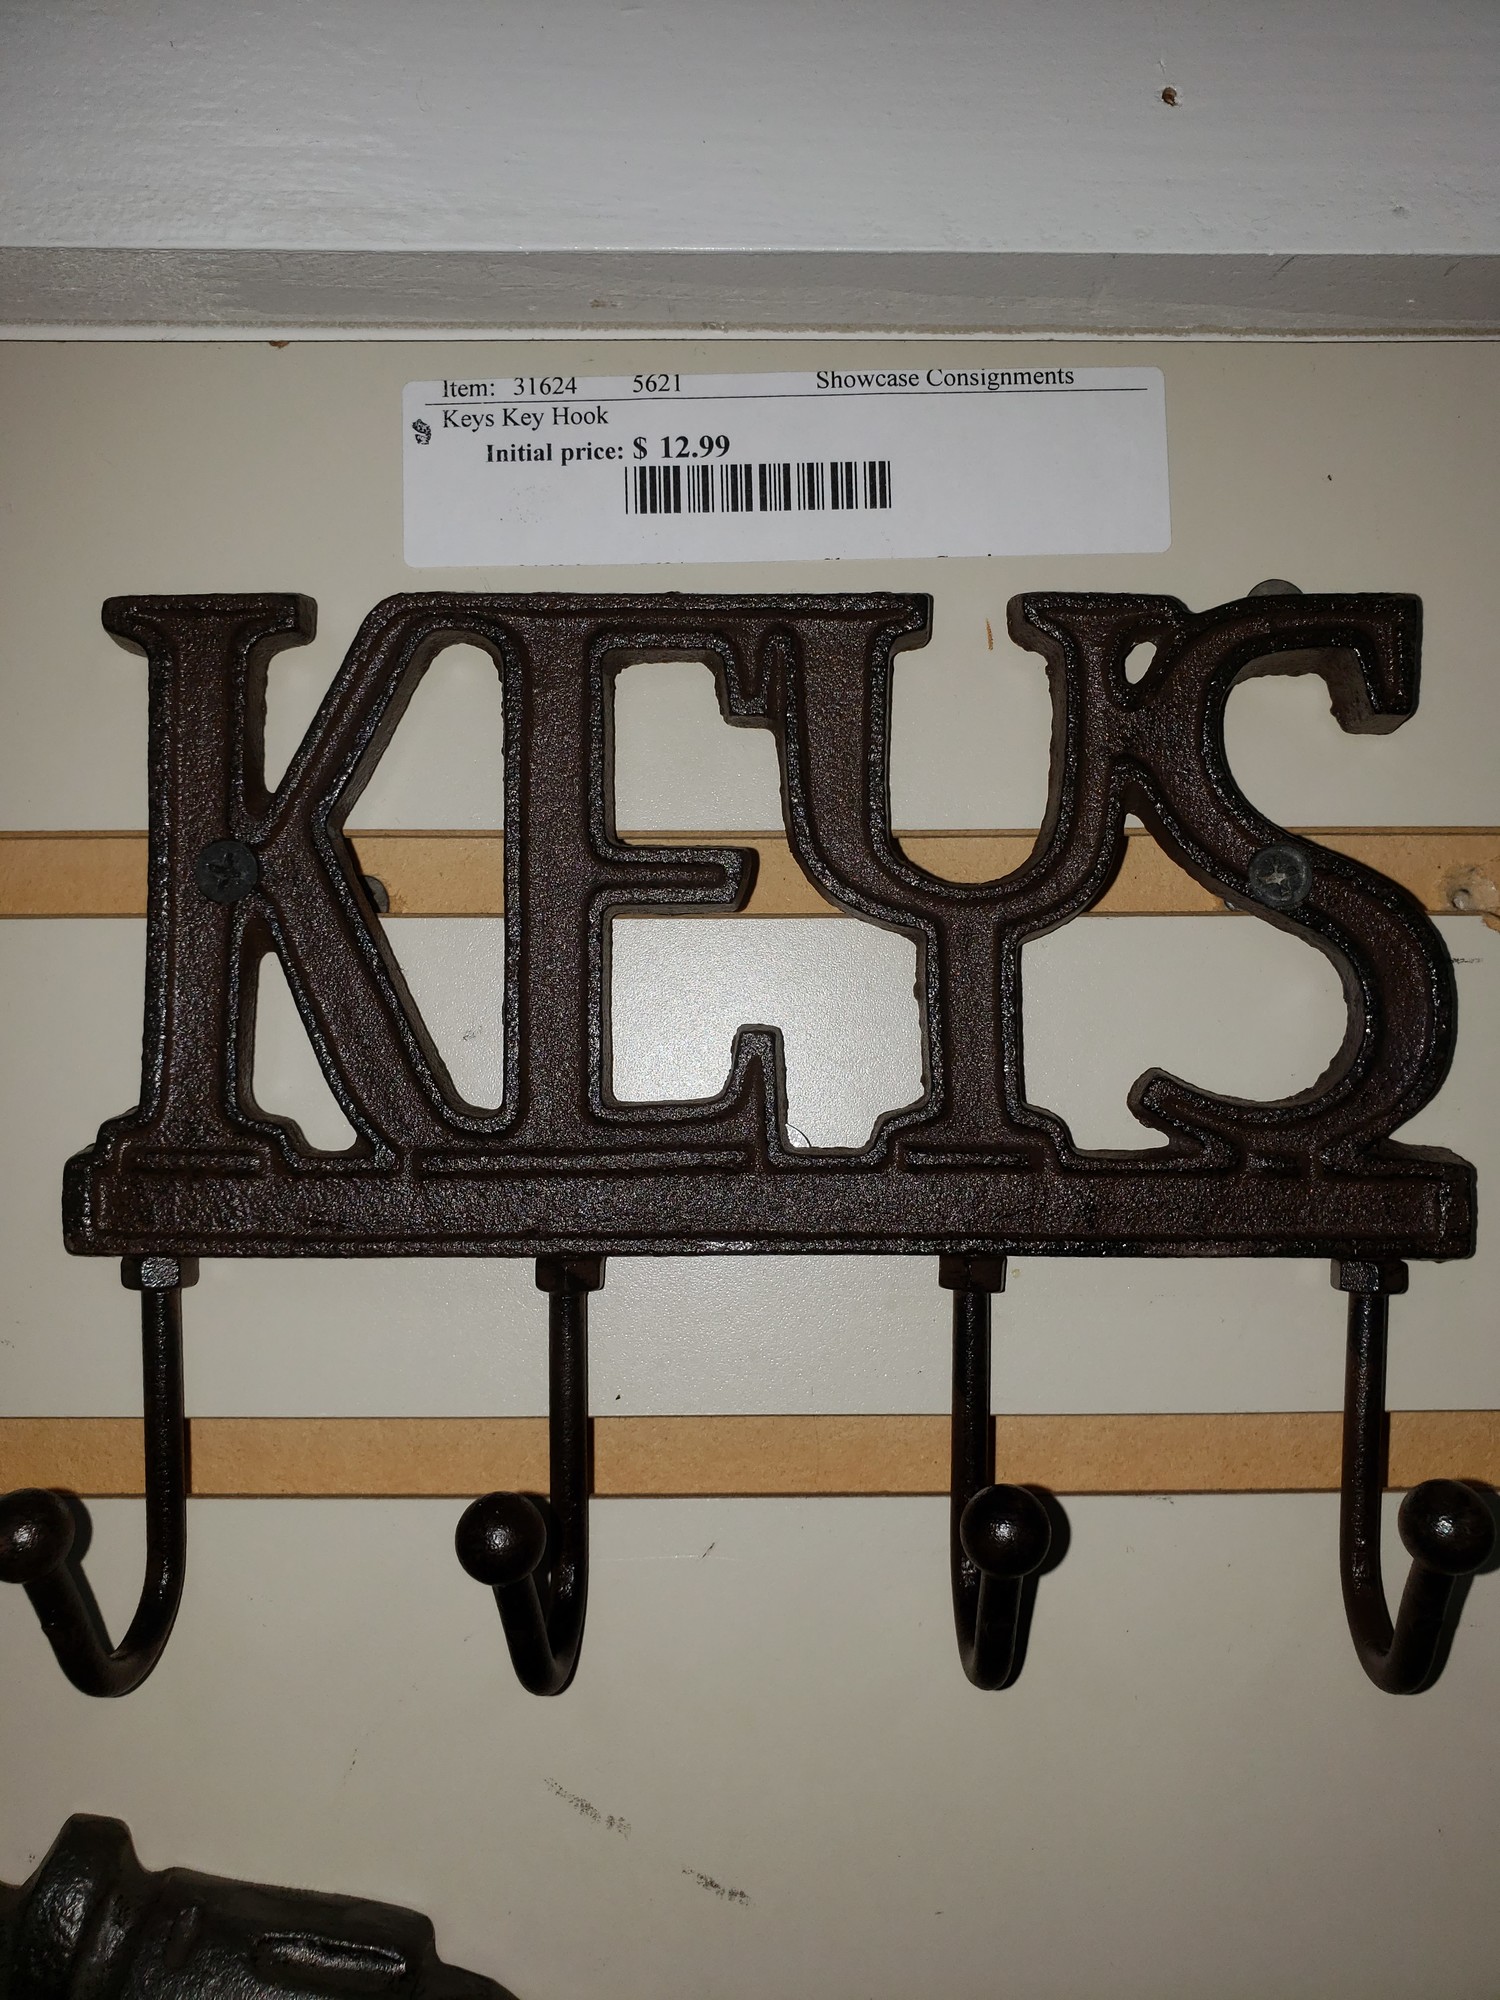 Keys Key Hook